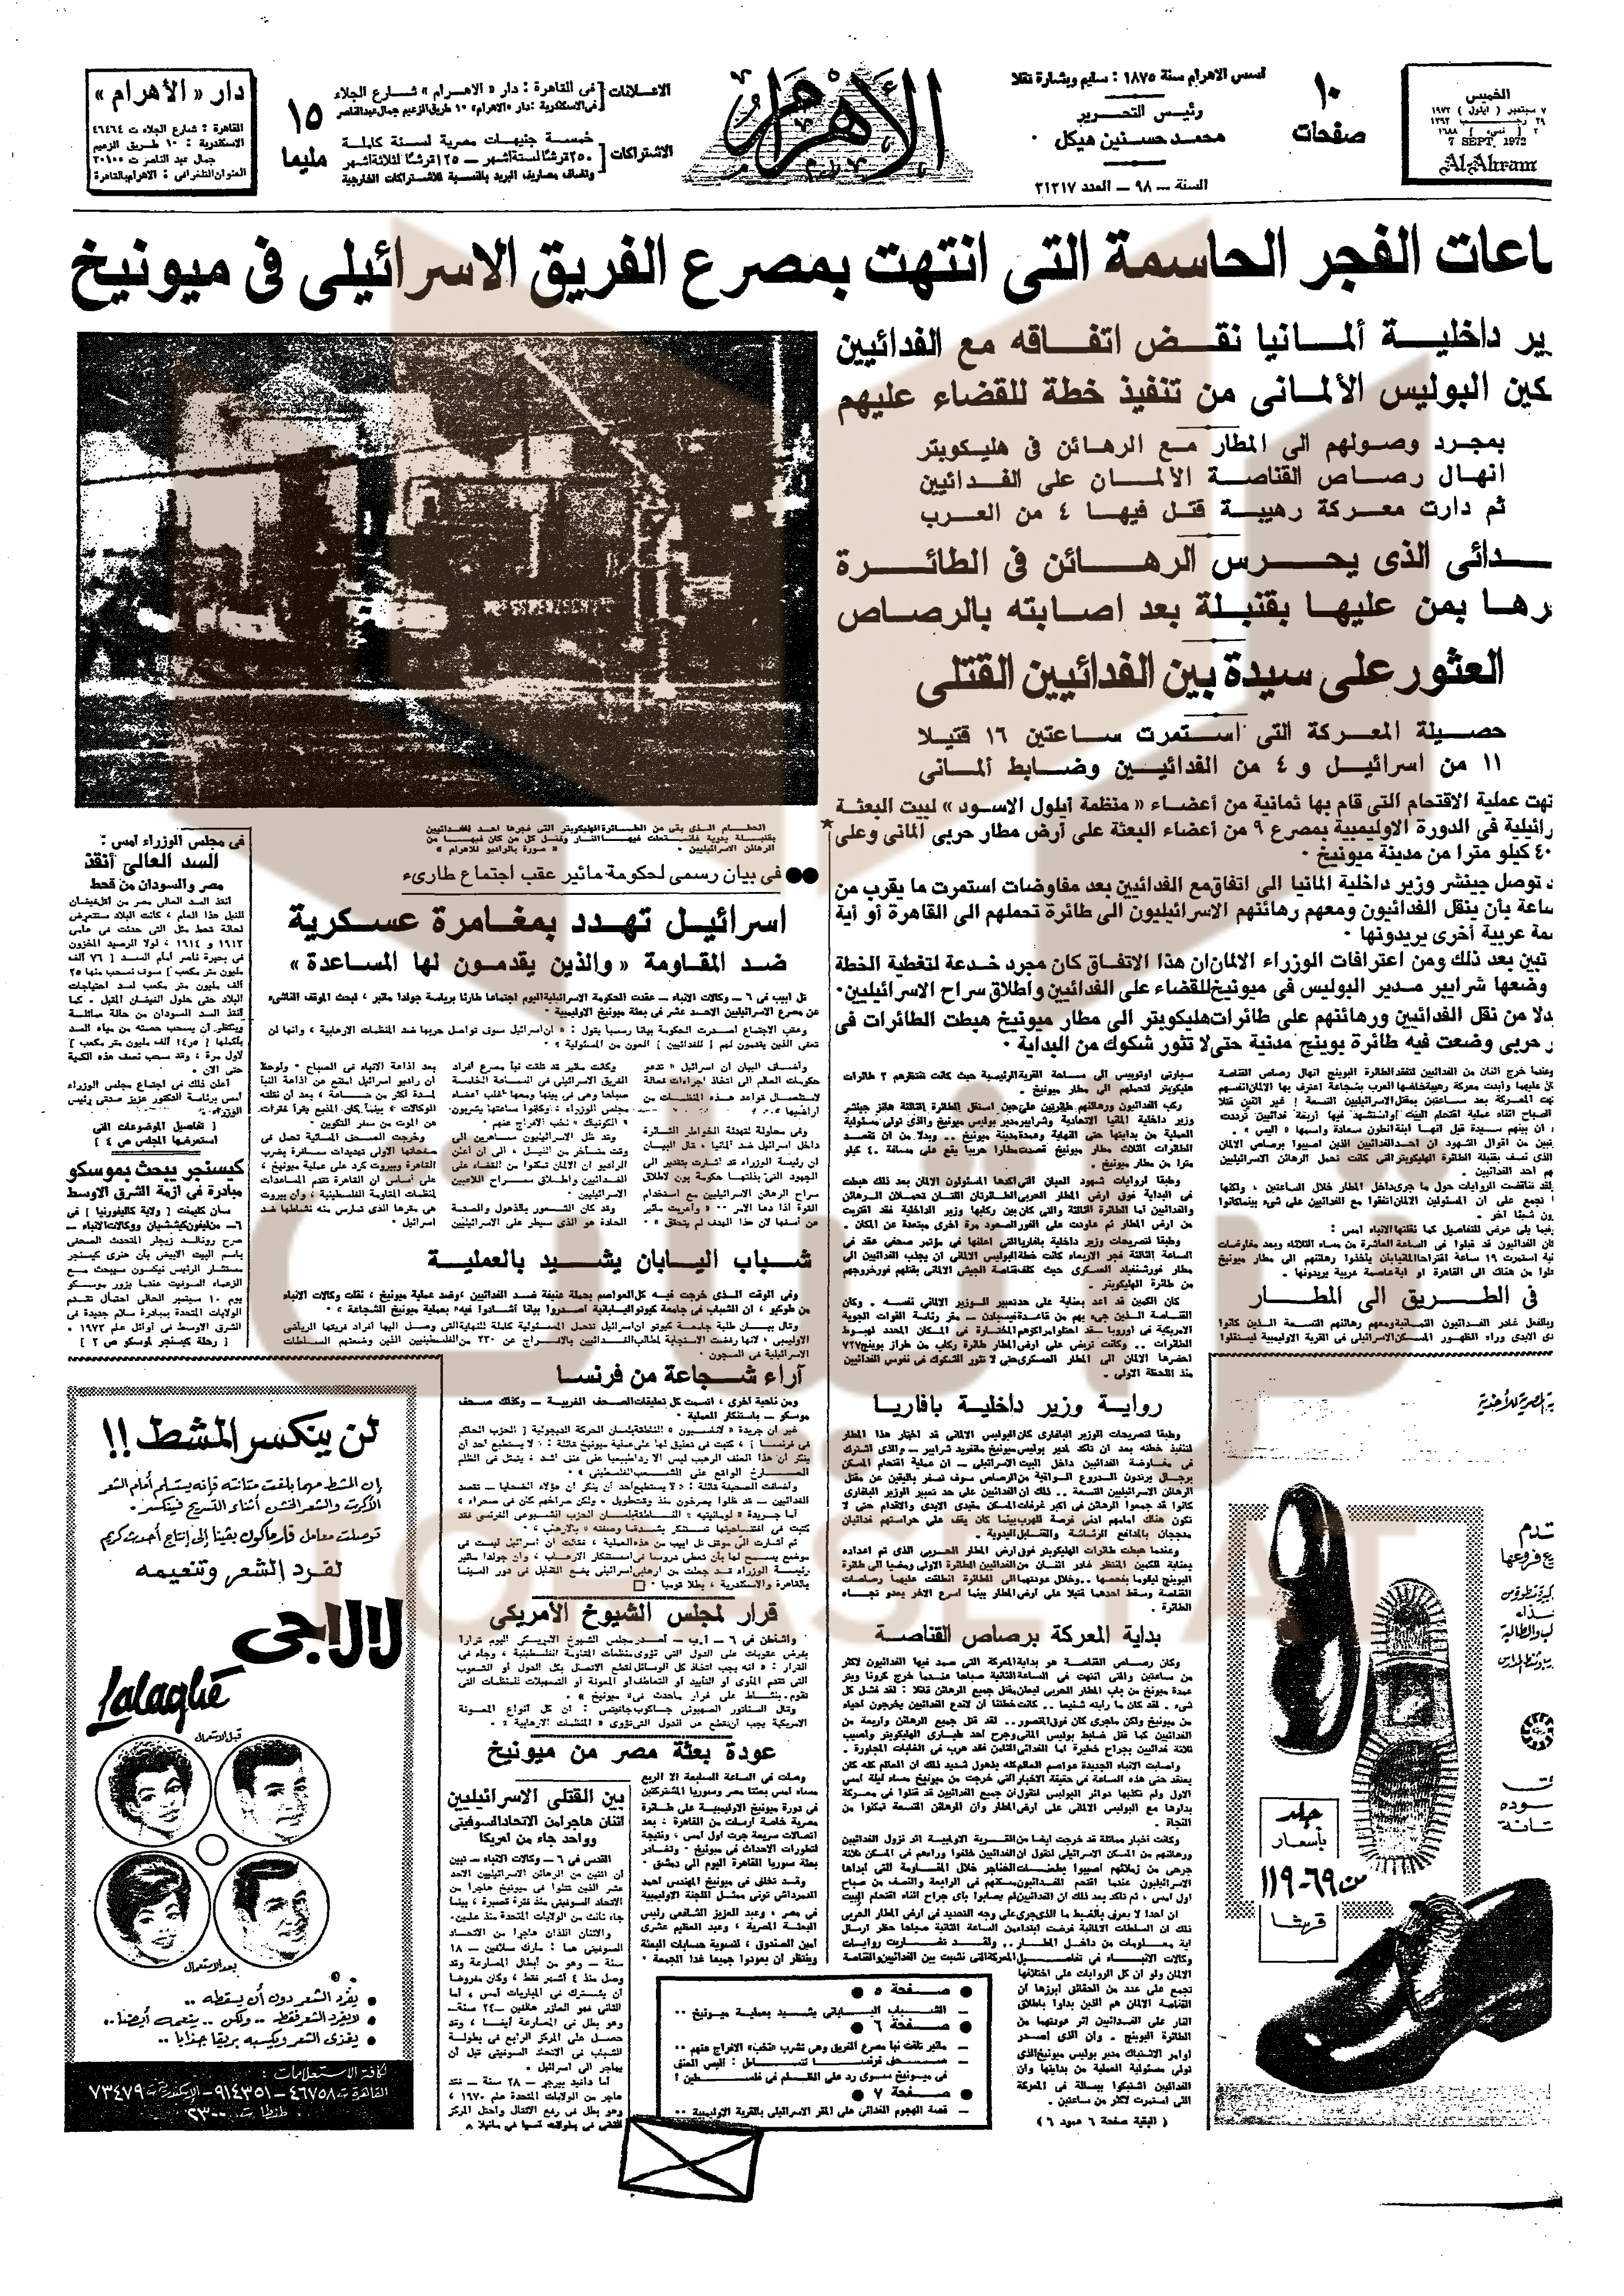 الصفحة الأولى من جريدة الأهرام يوم 7 سبتمبر 1972 م